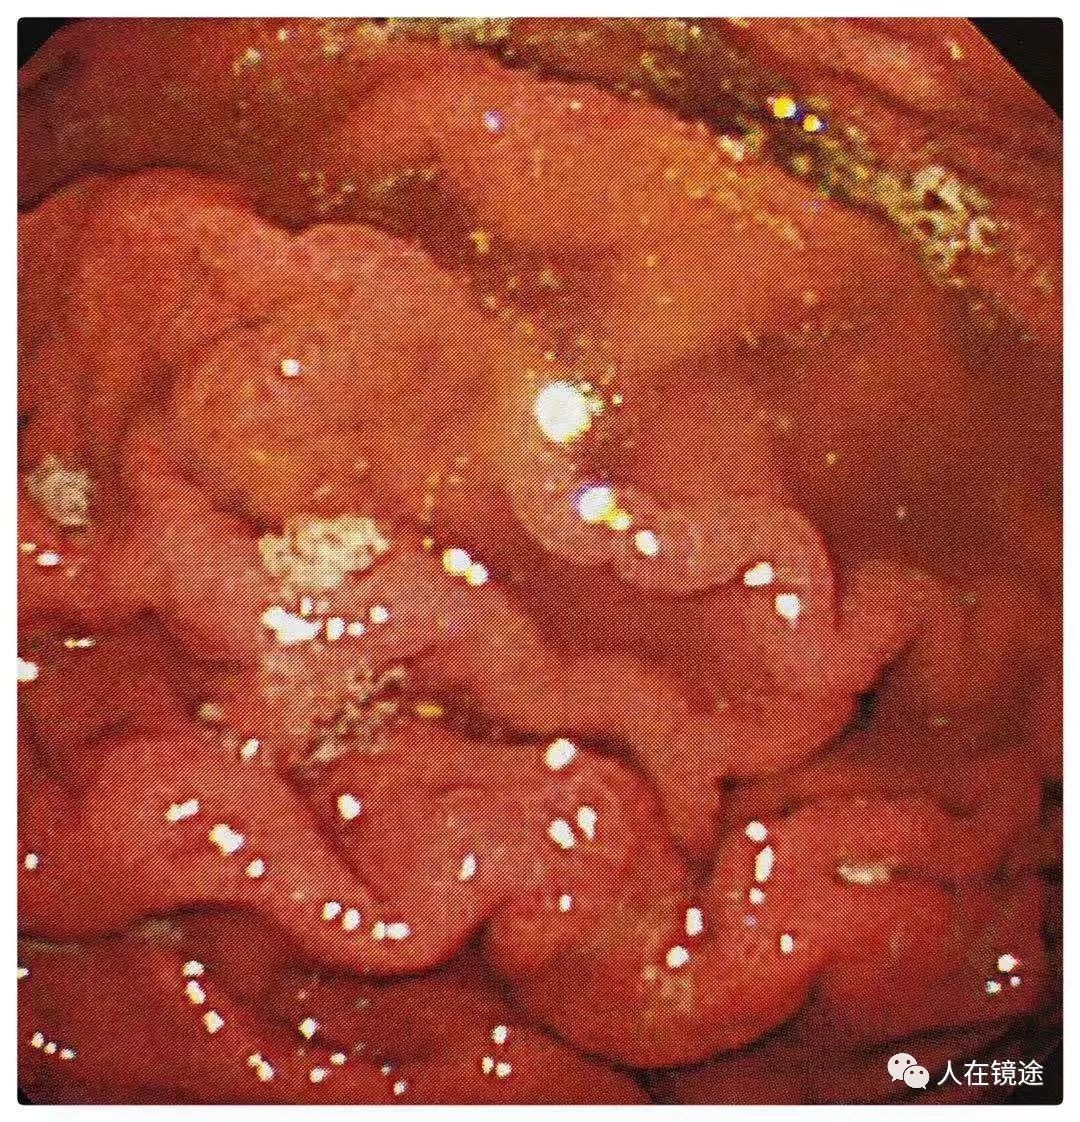 幽门螺旋杆菌胃镜图片图片